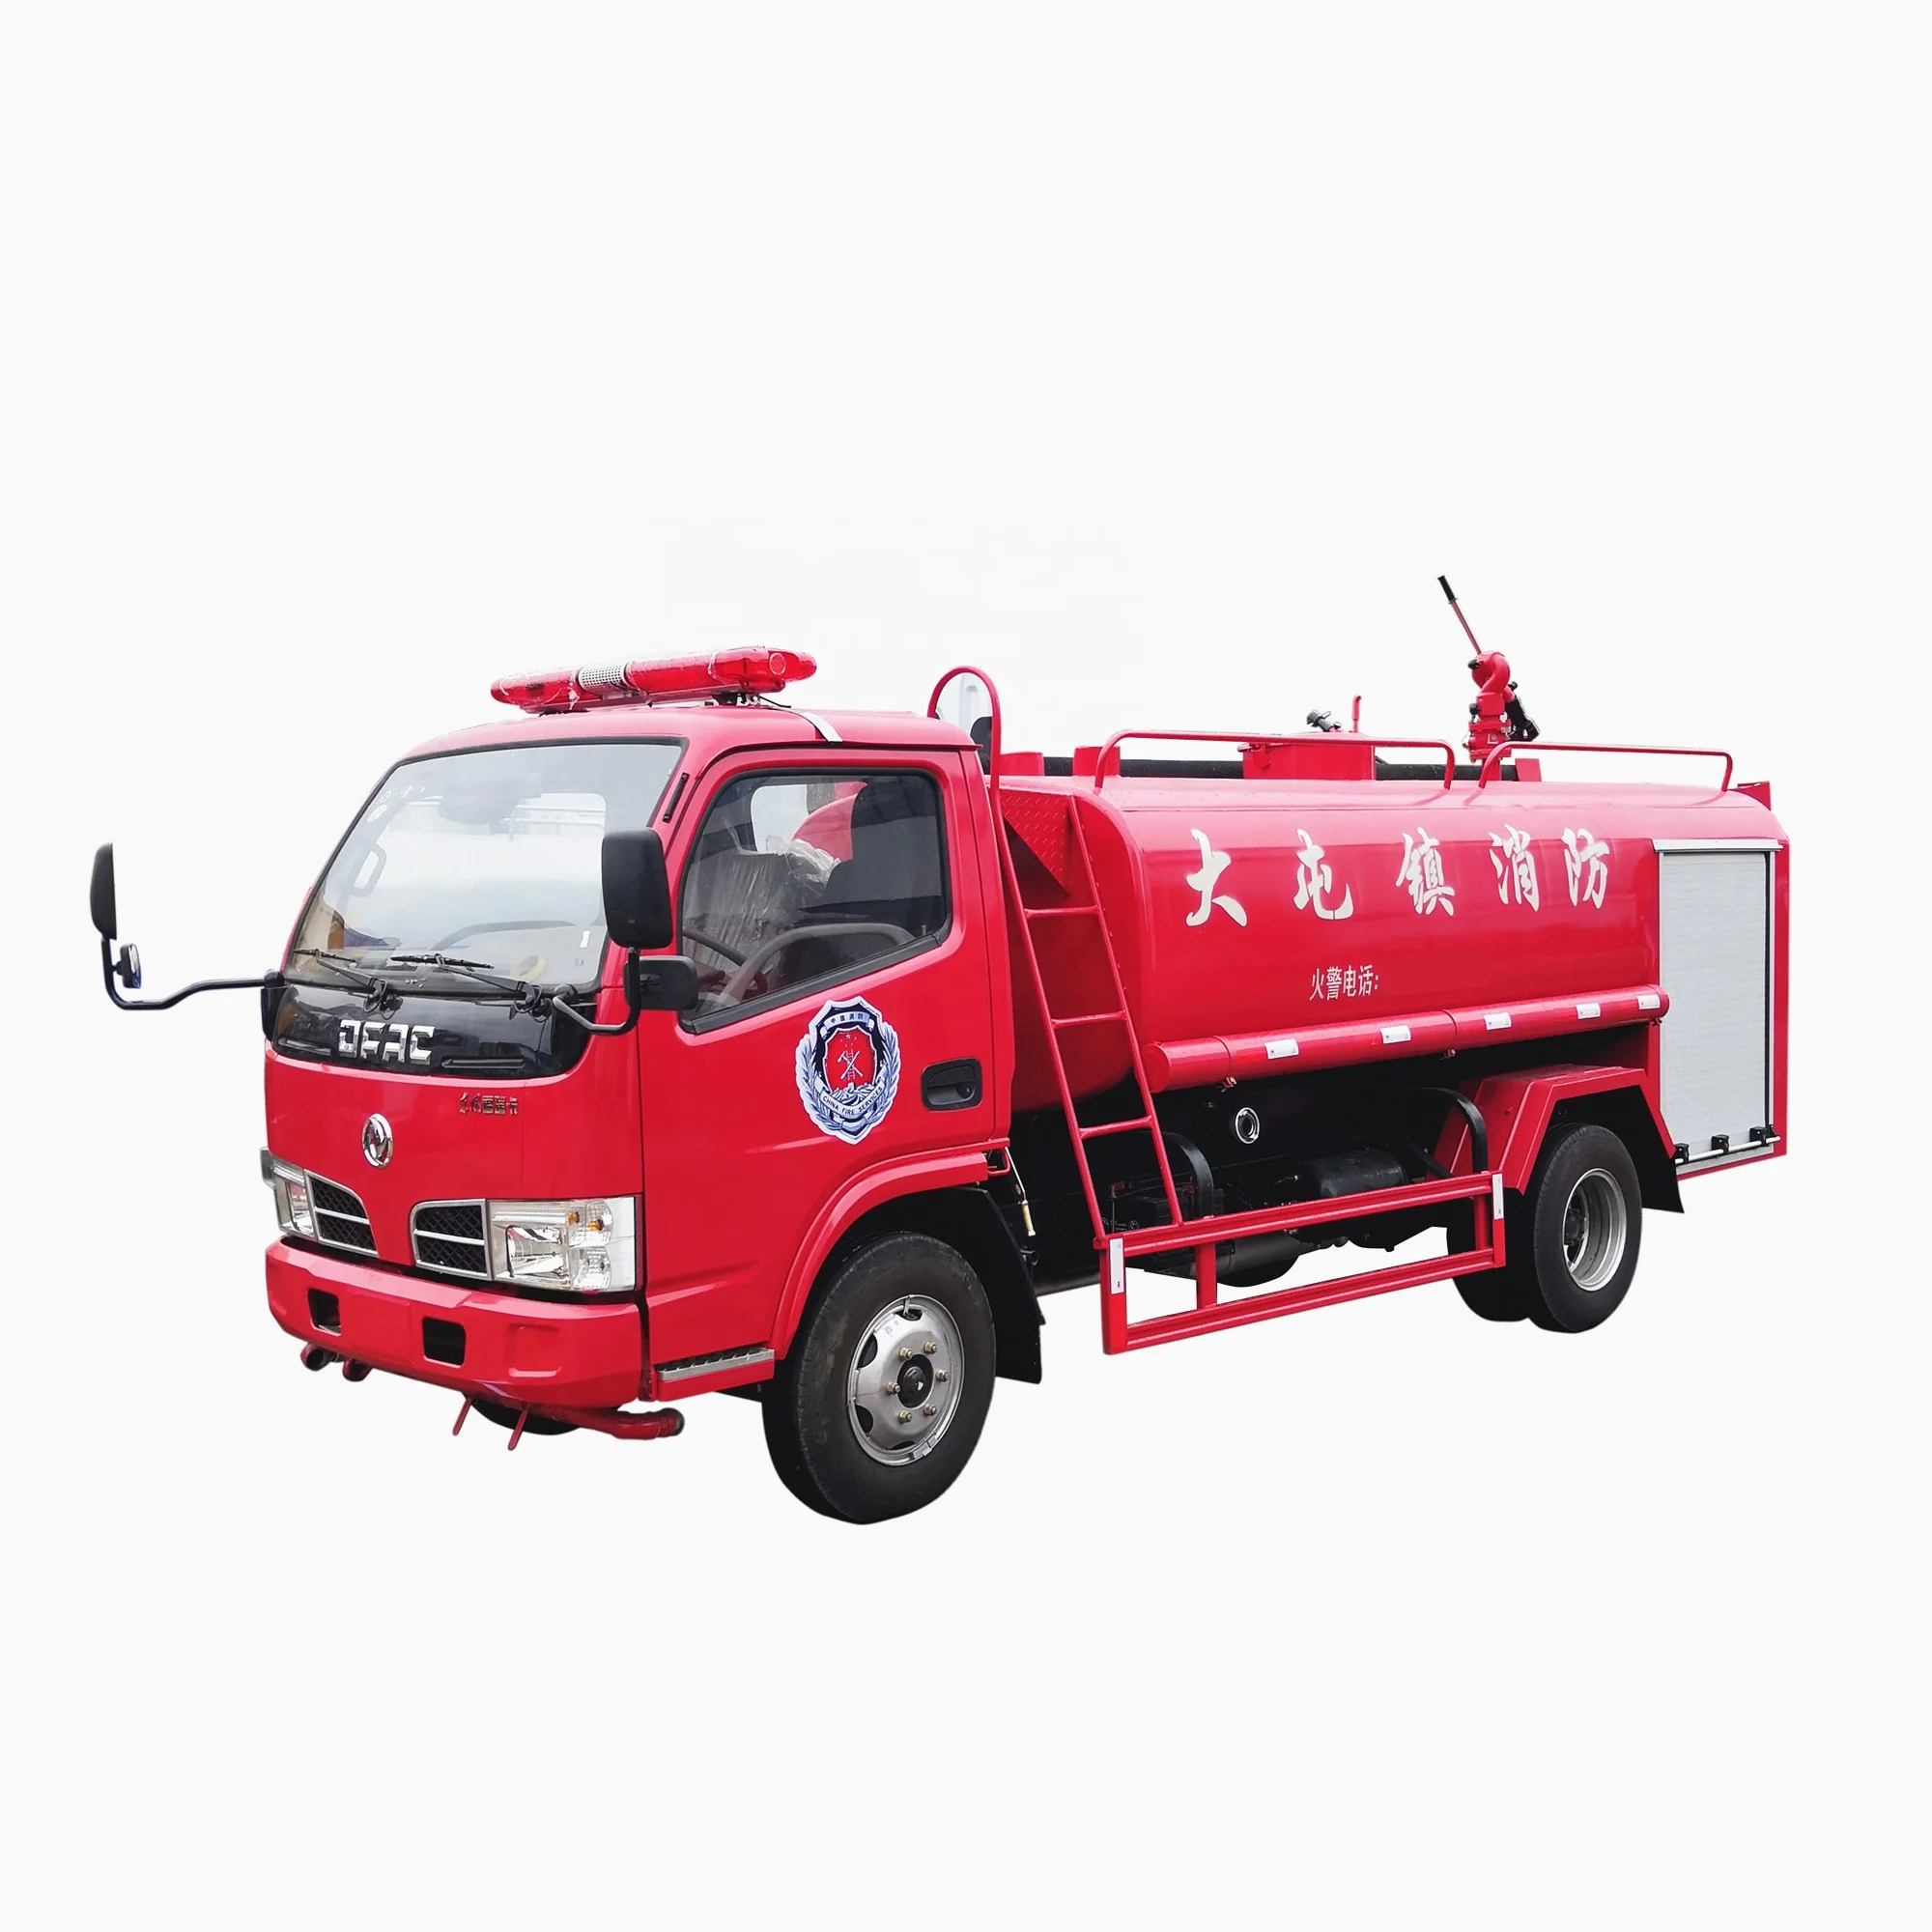 Truk Tangki Air Penyiram Api 3000 4000 5000 Liter Buy Fire Sprinkler Truk Tangki Air Truk Pemadam Kebakaran Distributor Tangki Air Truk Pemadam Kebakaran Produsen Product On Alibabacom